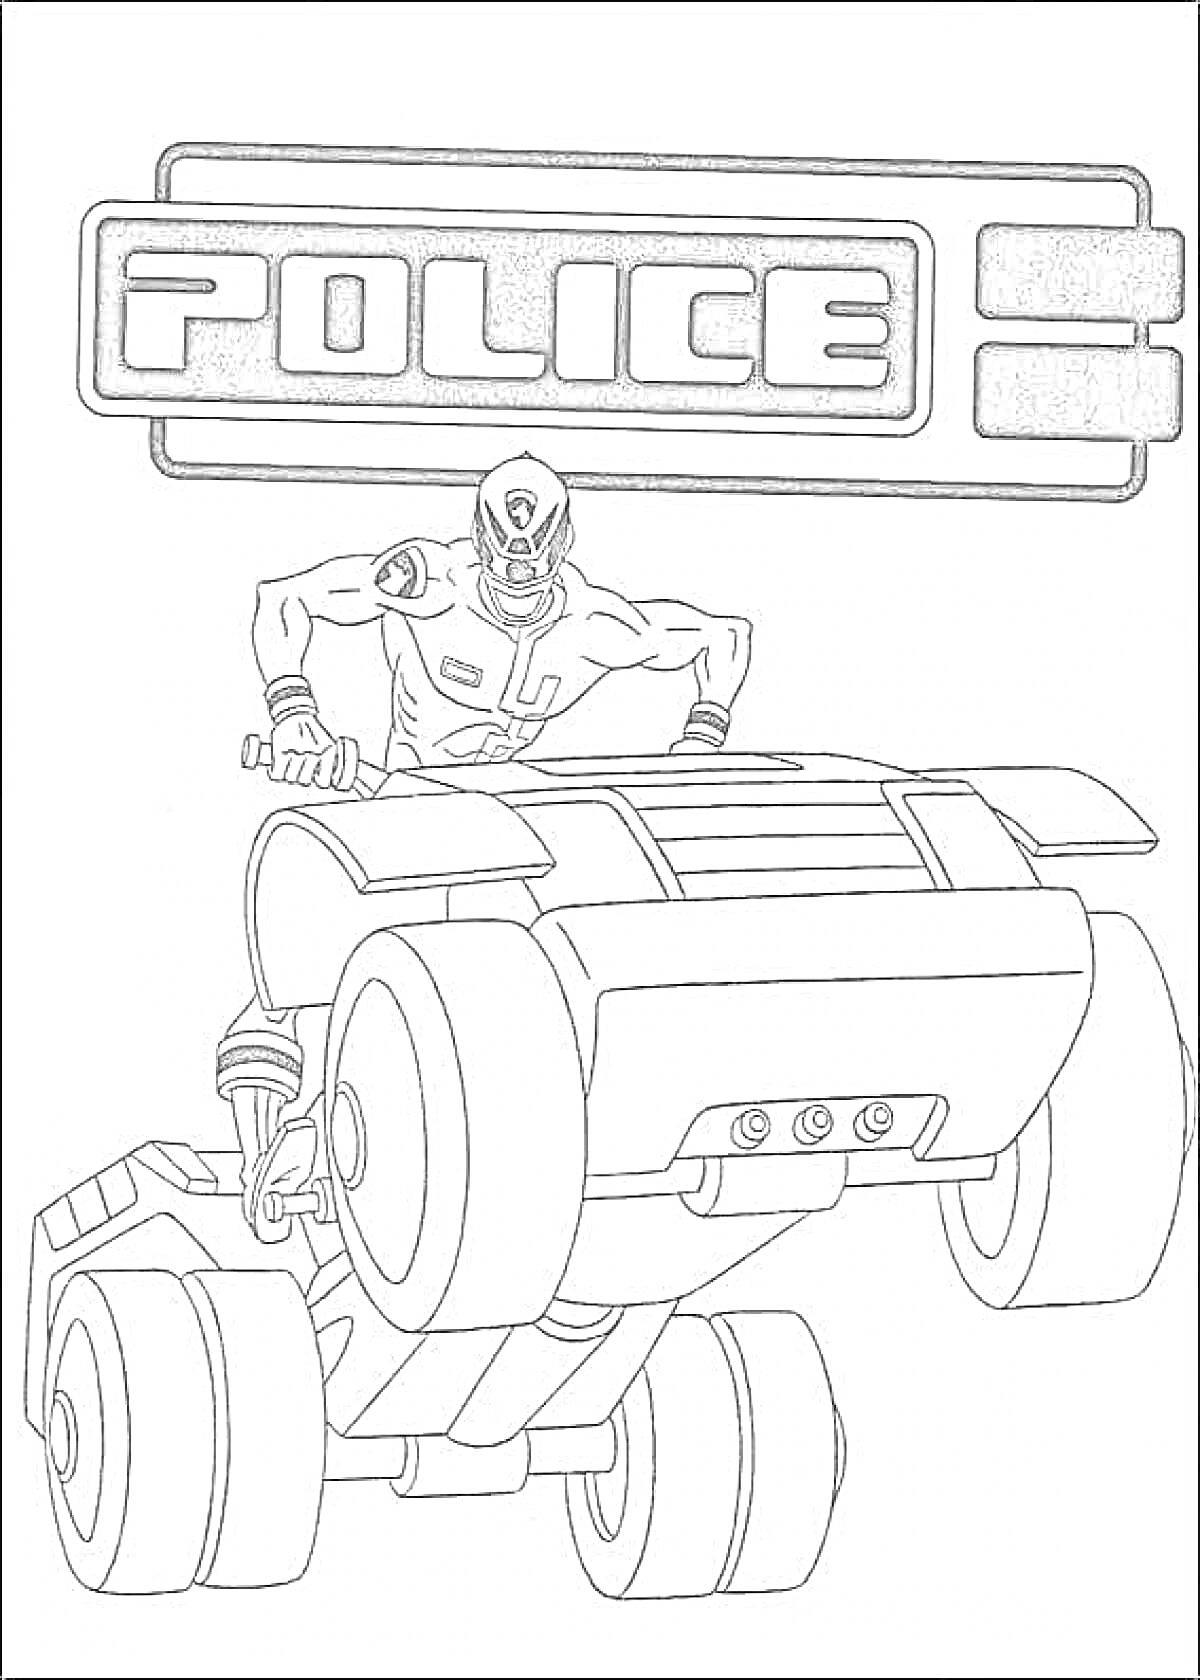 Полицейский робот с большим автомобилем и надписью 